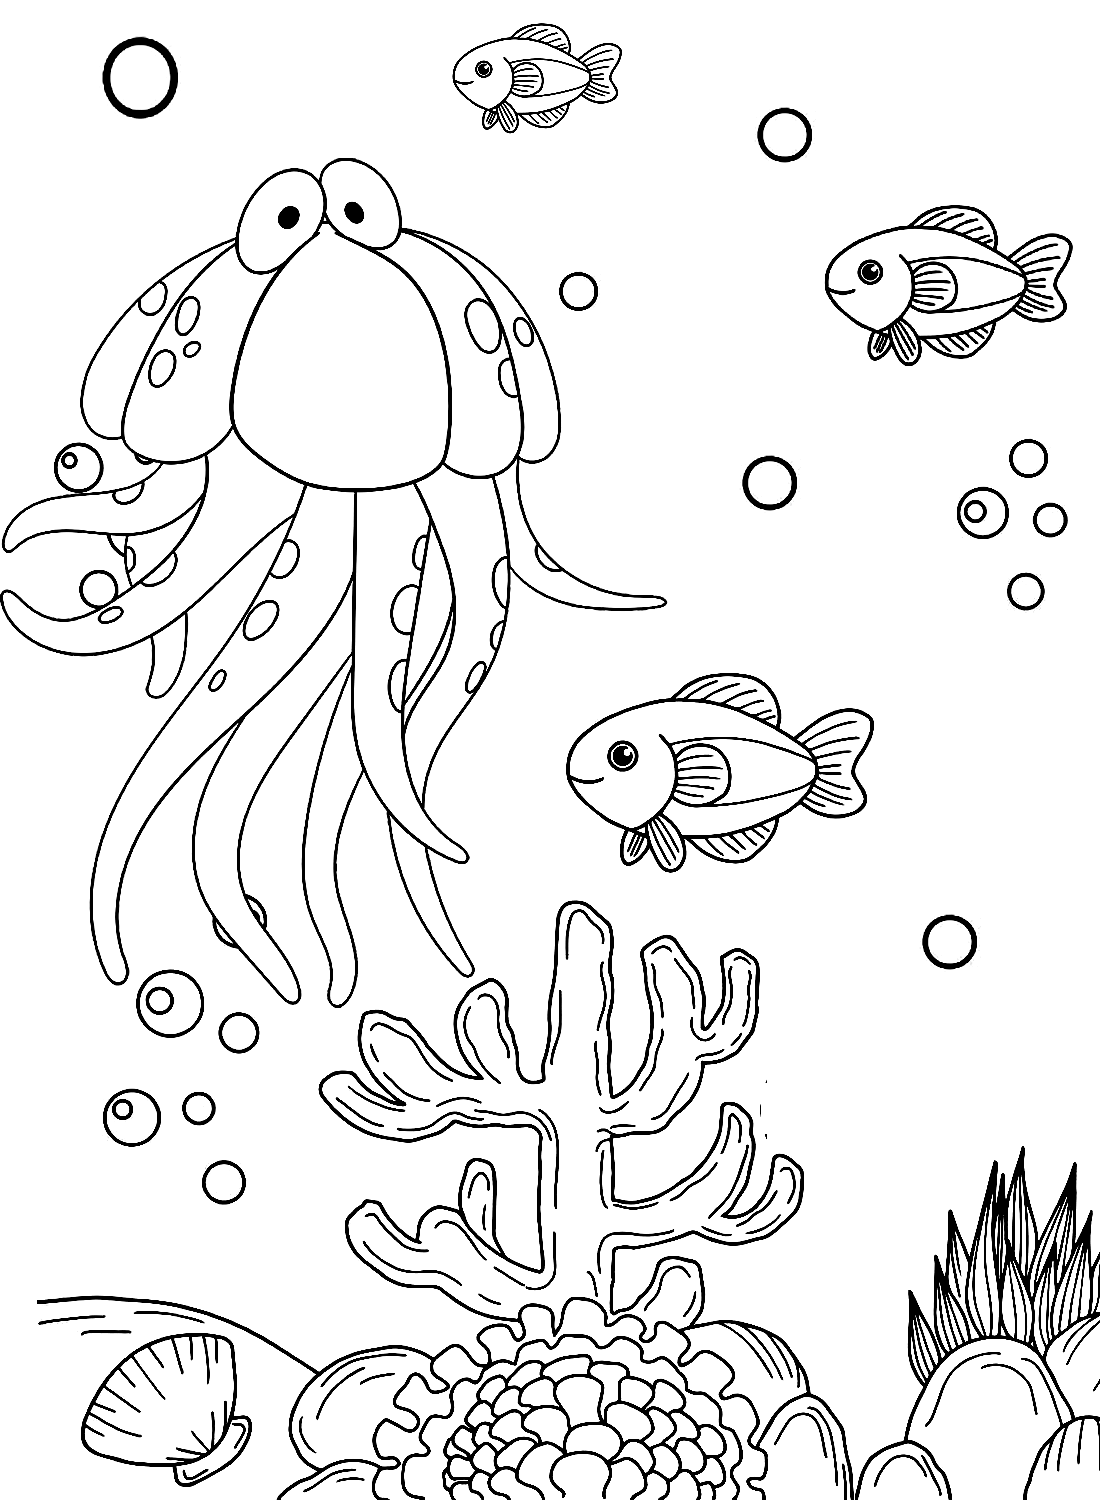 Pagina da colorare di meduse